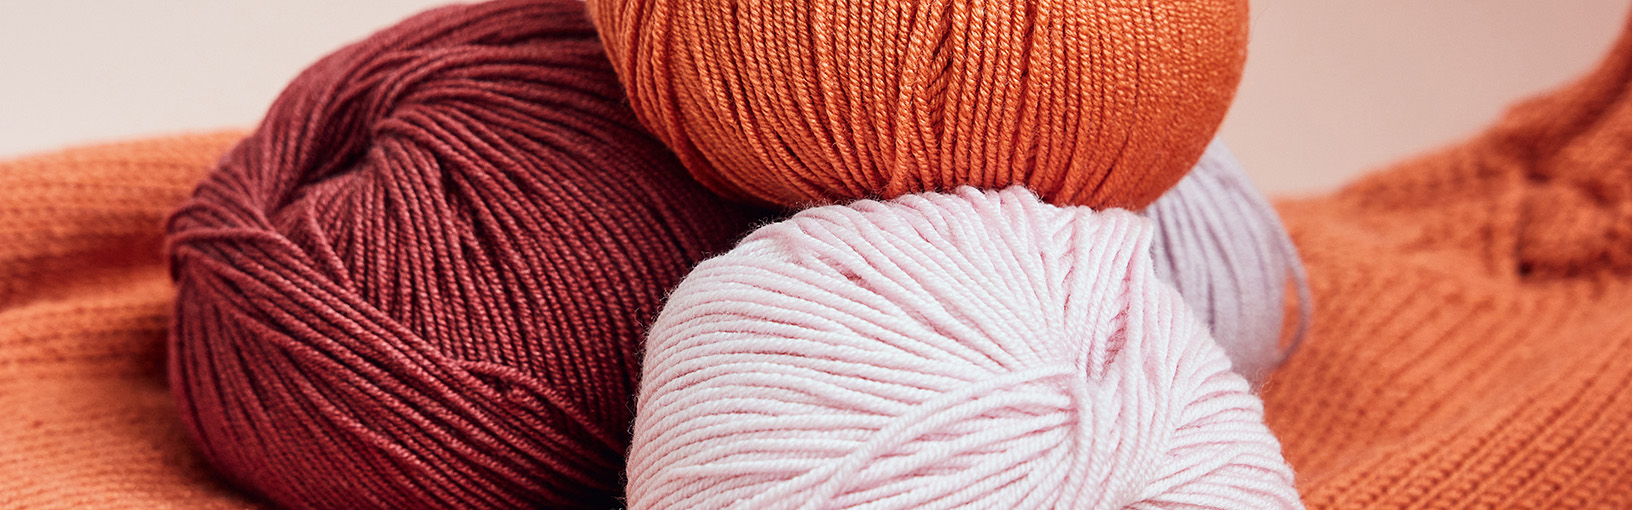 Garn af høj kvalitet til strikning, hækling og filtning LANA GROSSA<br> uld & garn | Sokkegarn